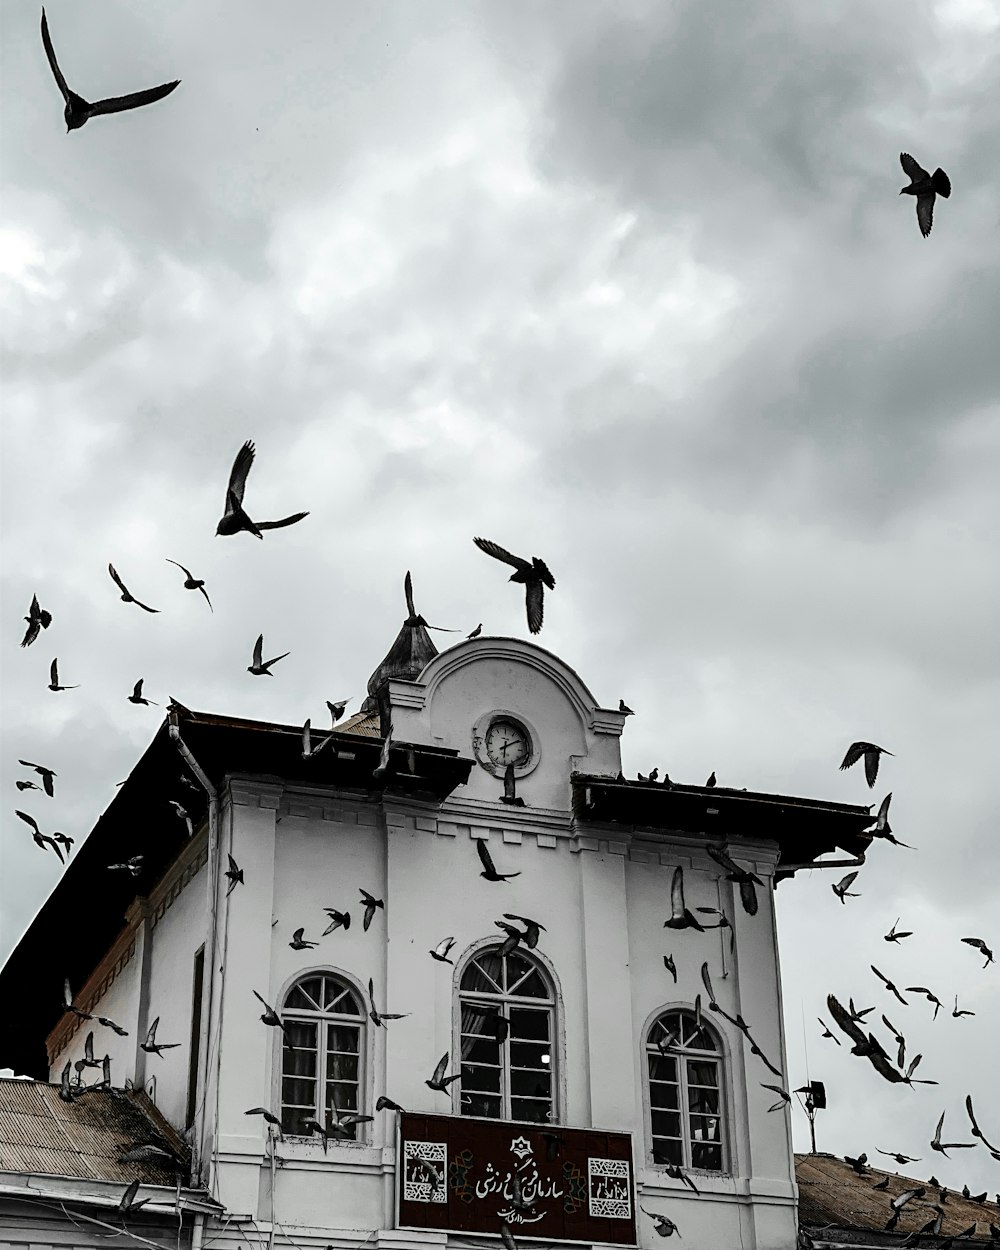 Uno stormo di uccelli che volano sopra un edificio